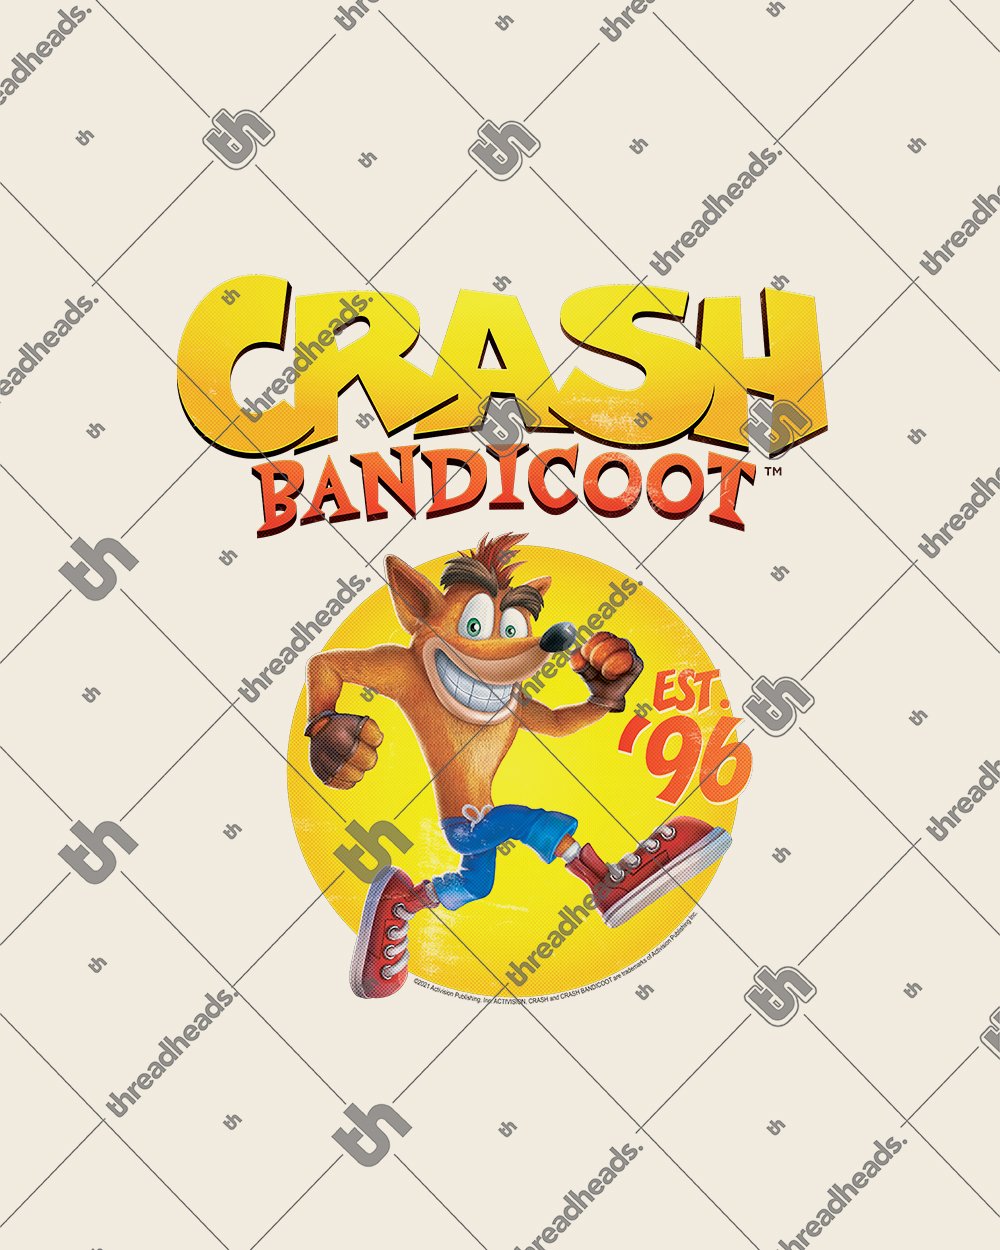 Crash Bandicoot Est 96 T-Shirt Australia Online #colour_natural